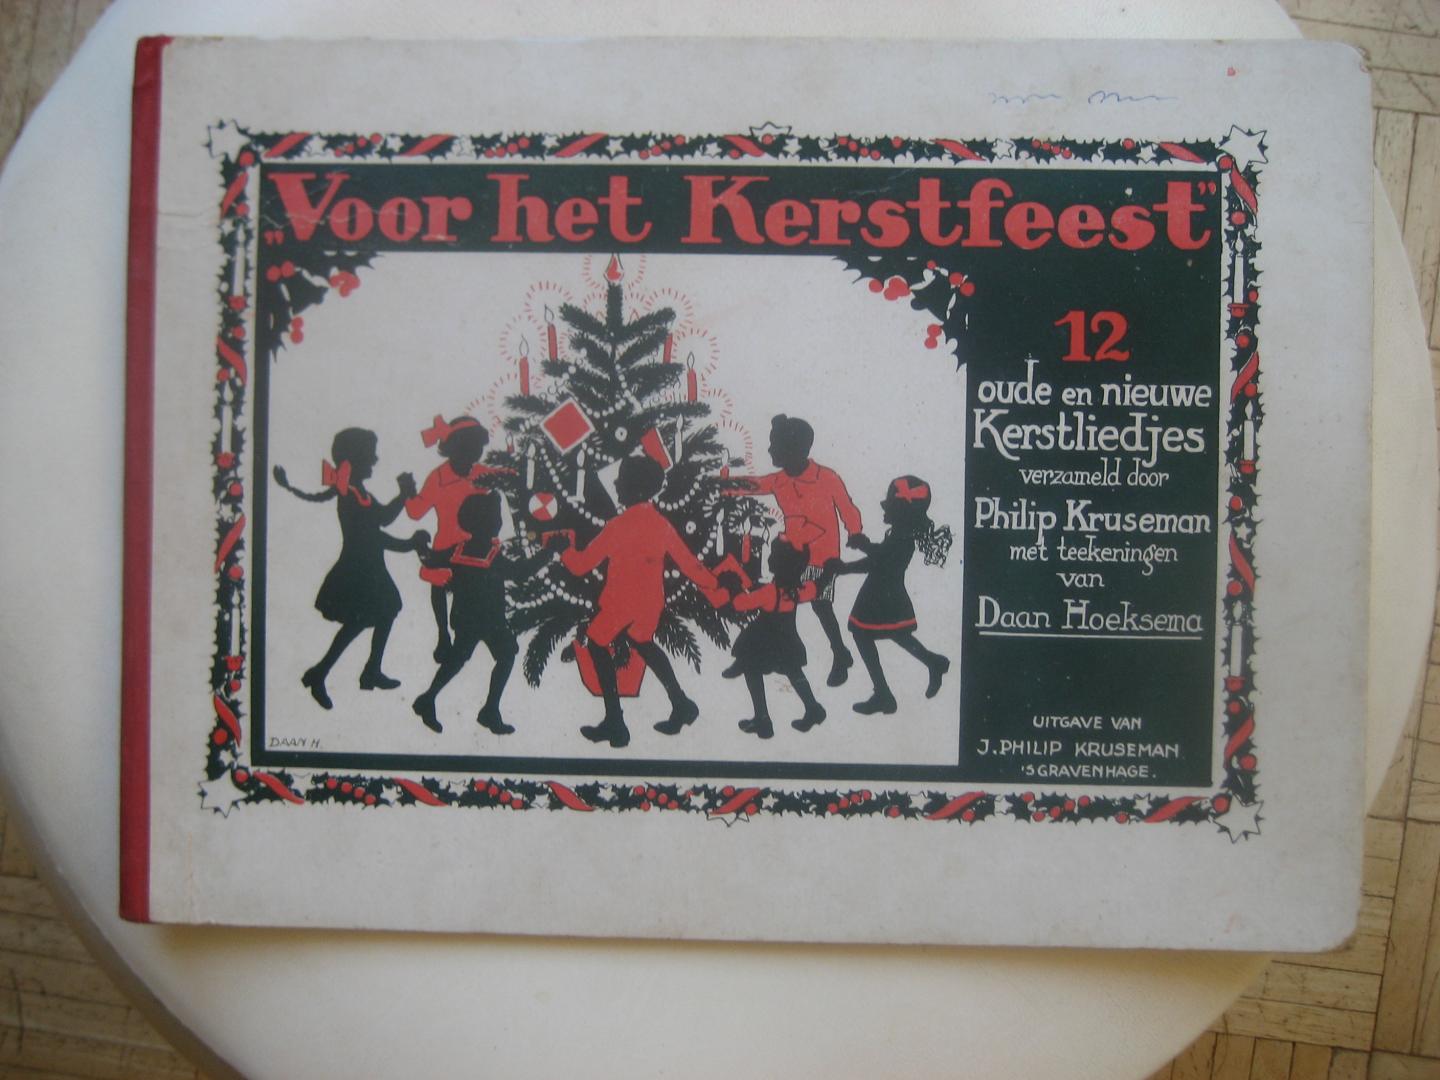 Philip Kruseman met teekeningen van Daan Hoeksema - Voor het Kerstfeest / 12 oude en nieuwe Kerstliedjes